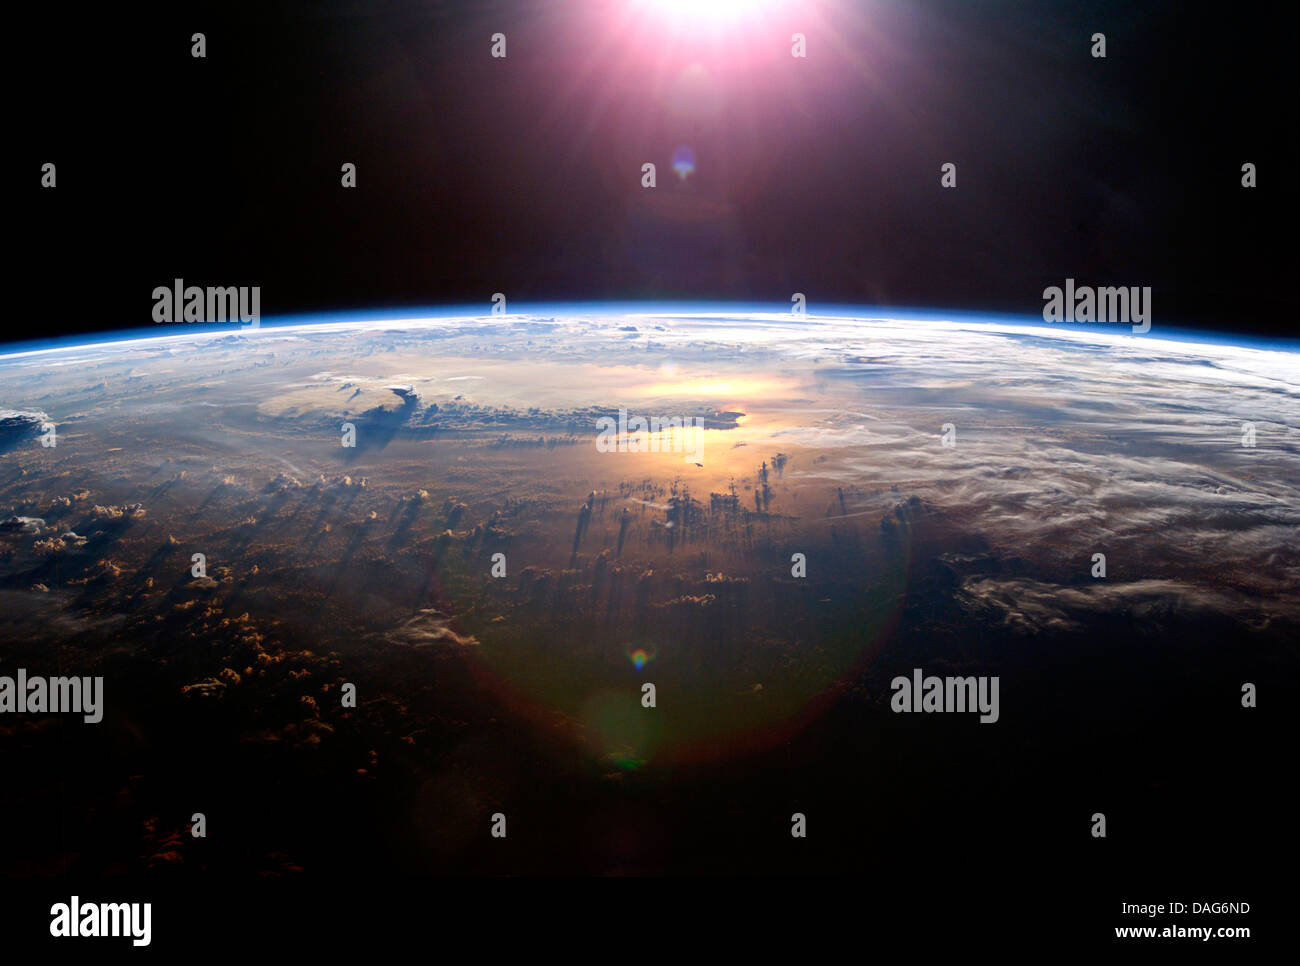 Vista della terra nella luce del sole dalla Stazione spaziale internazionale. Ottimizzato e la versione avanzata di un originale immagine della NASA Foto Stock